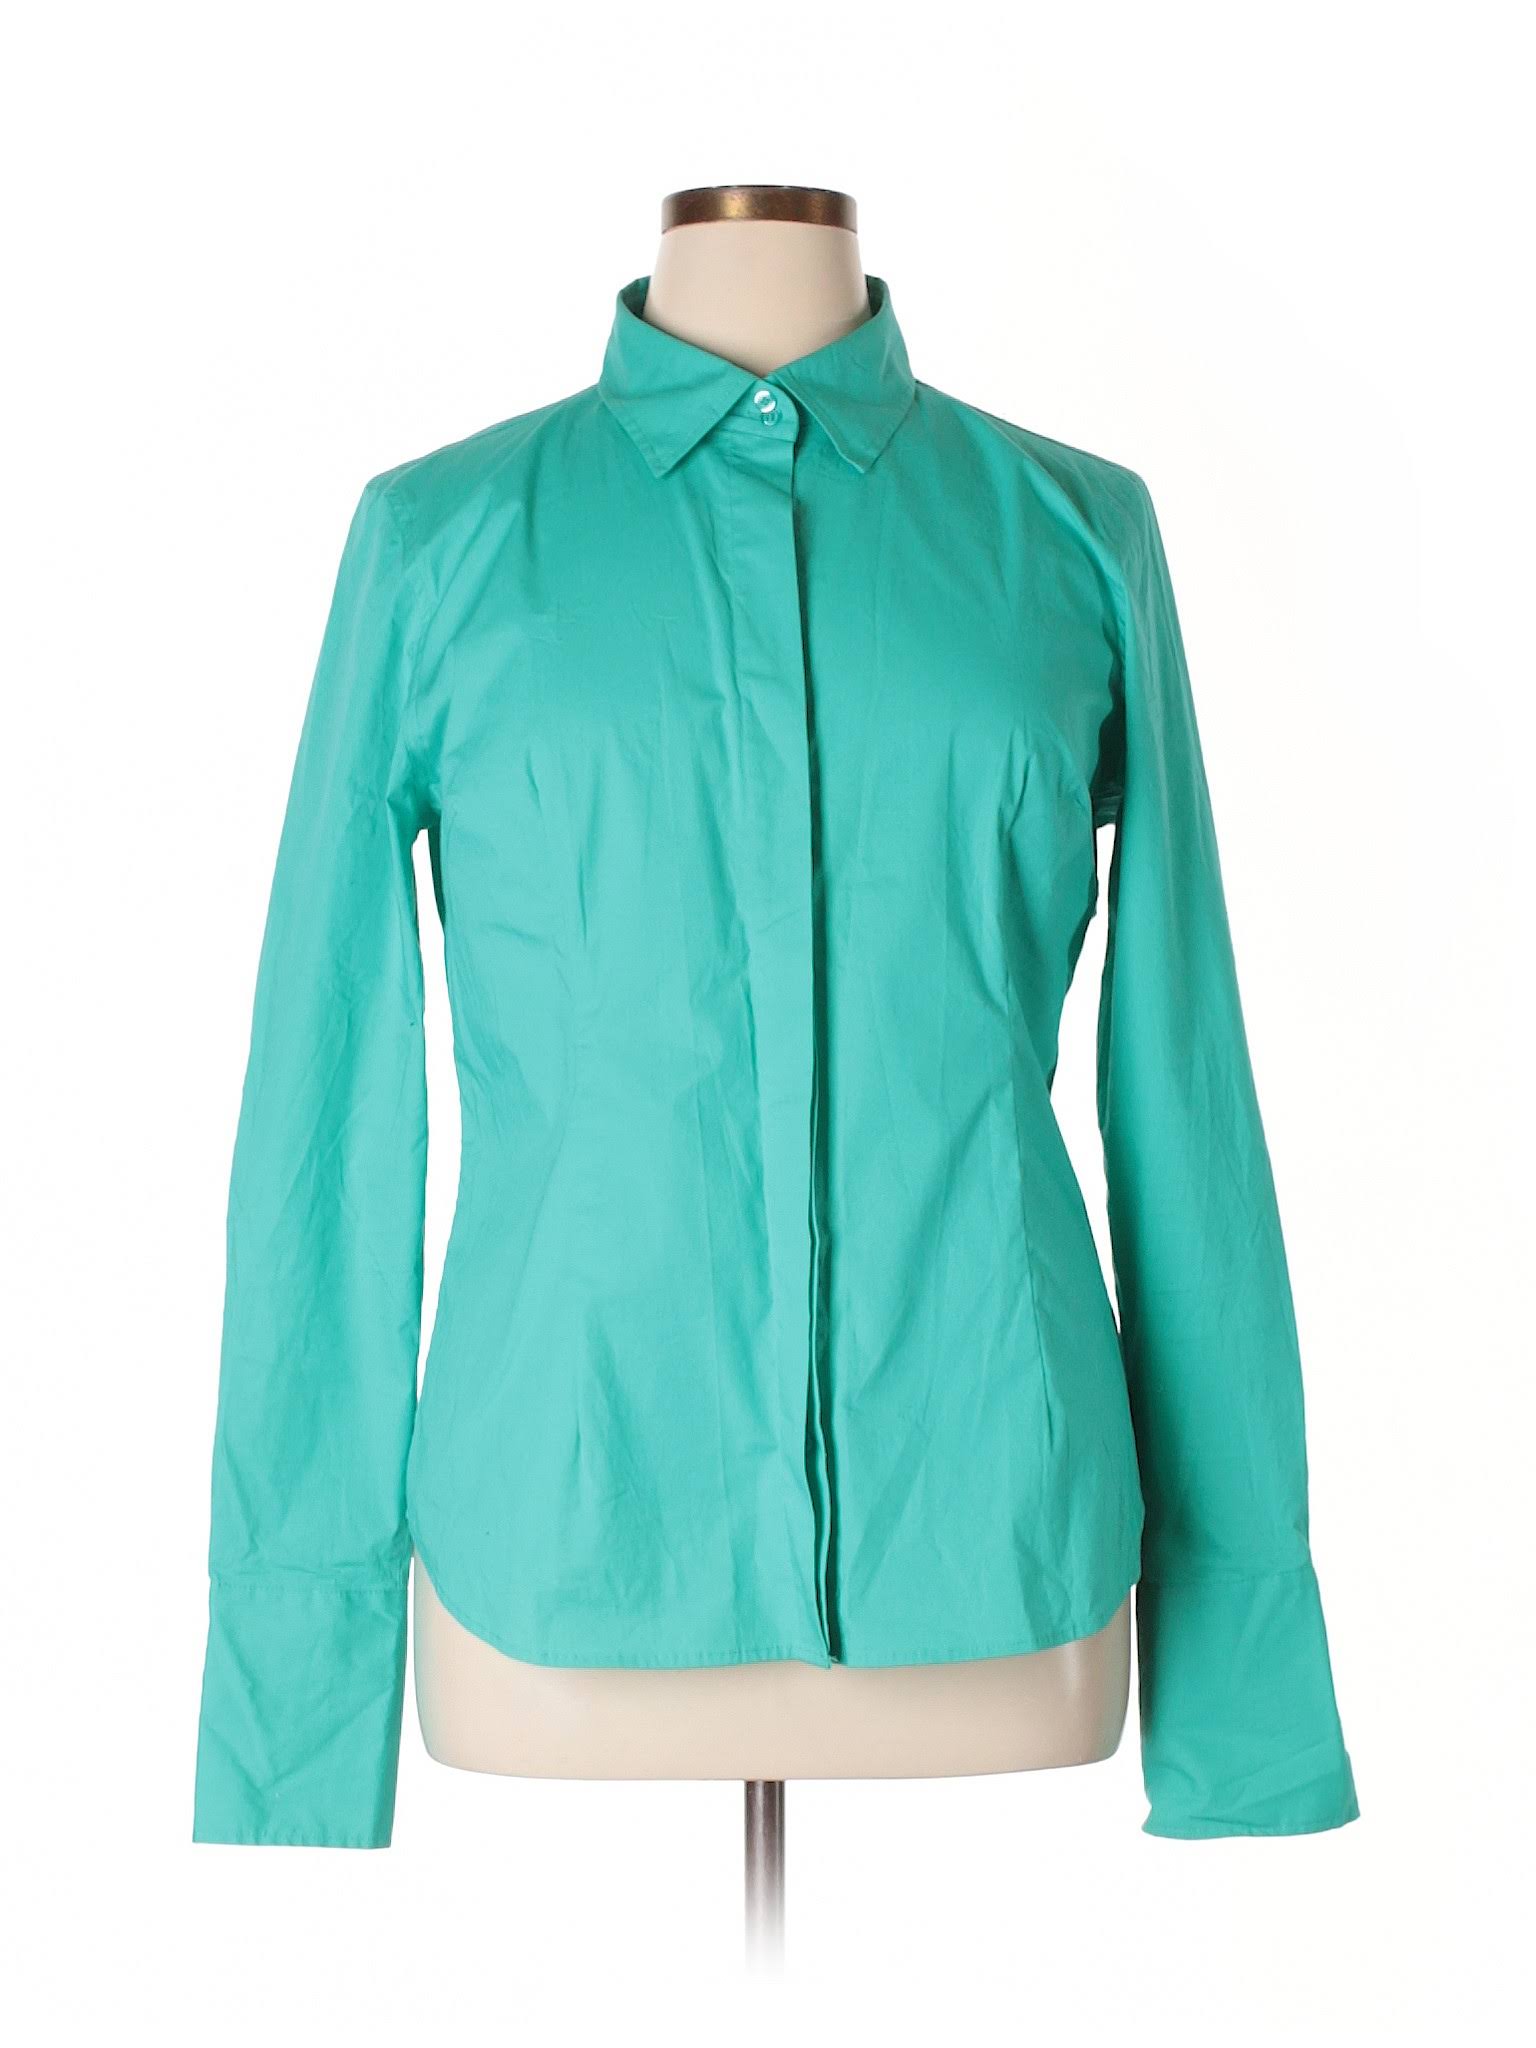 Moda International Long Sleeve Button Down Shirt Size 12: Teal Women's Tops - 38321221